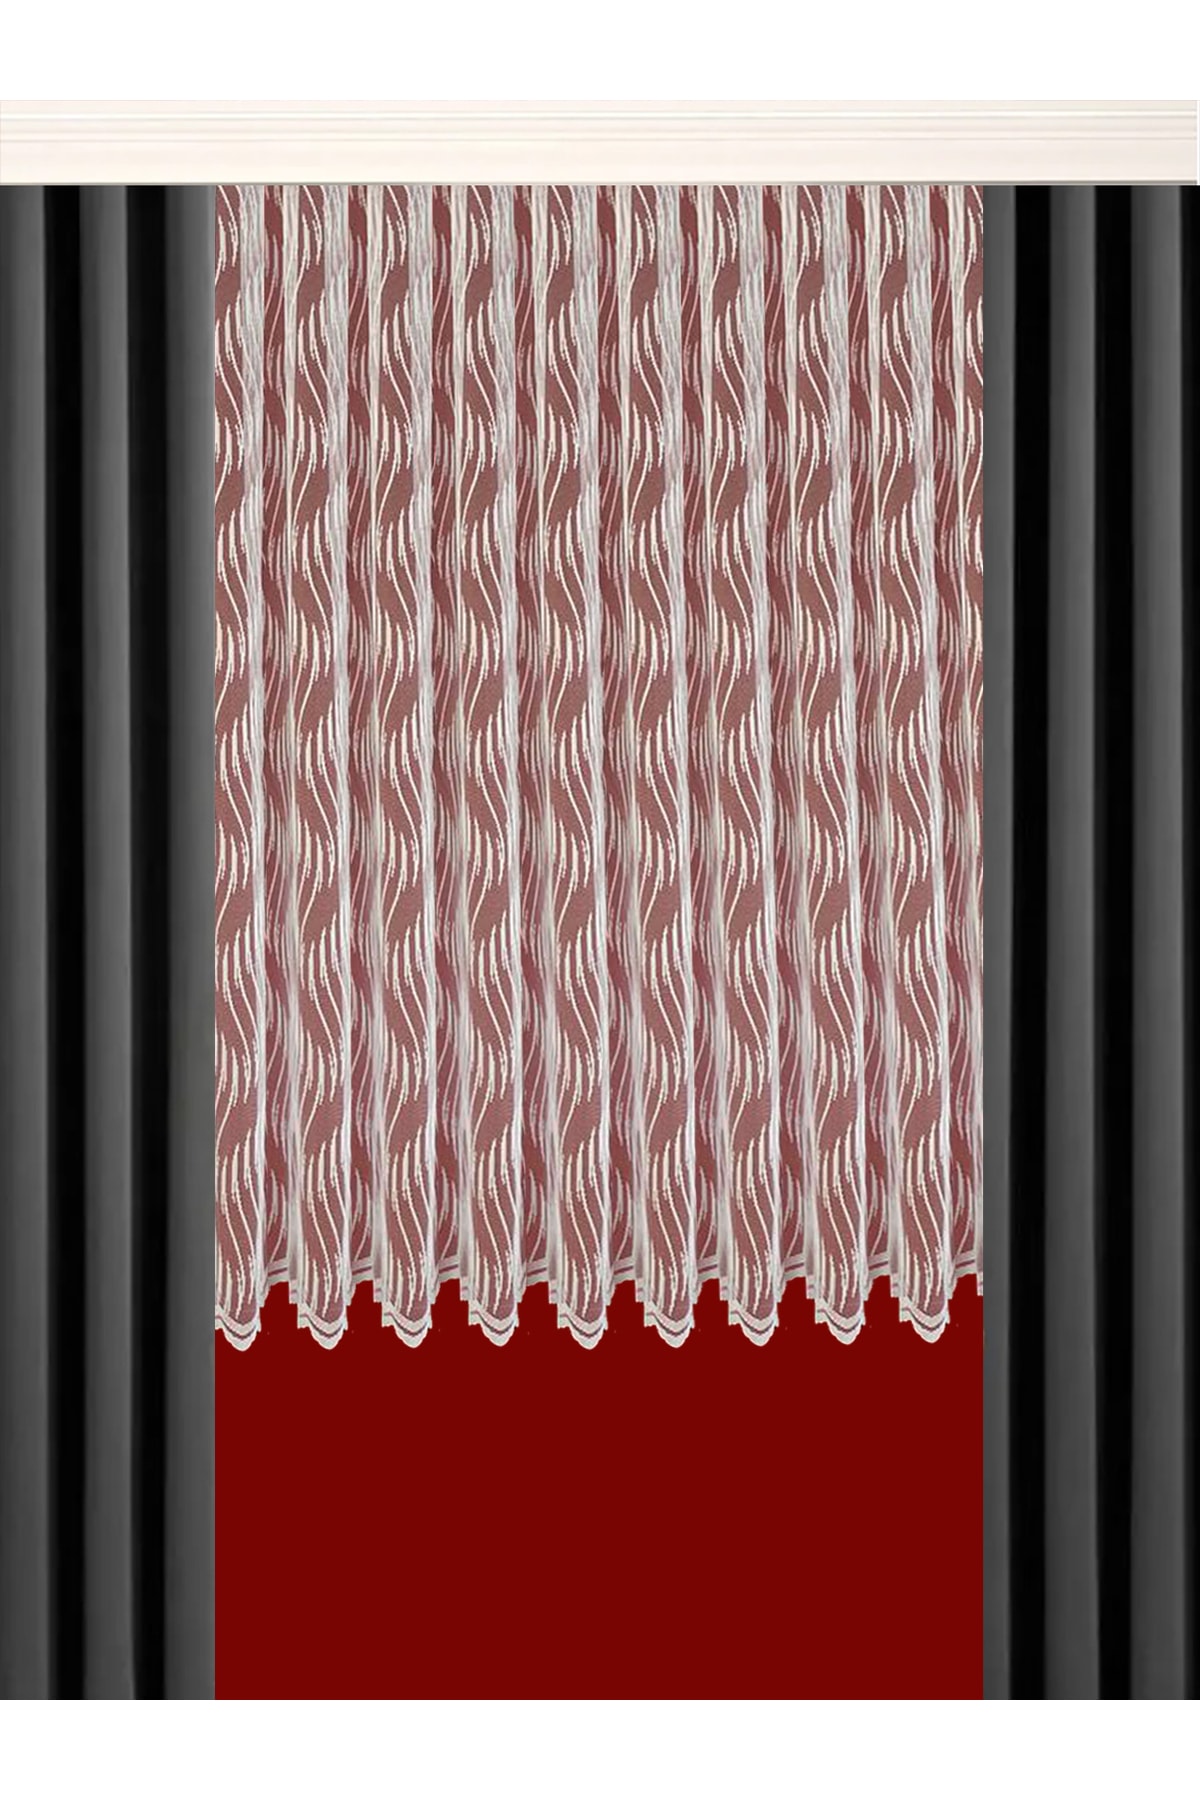 Seyfioğulları Tekstil Seyfioğulları Petek Üstü Kısa Tül Perde 1/2 Kat Pile Spiral Desen